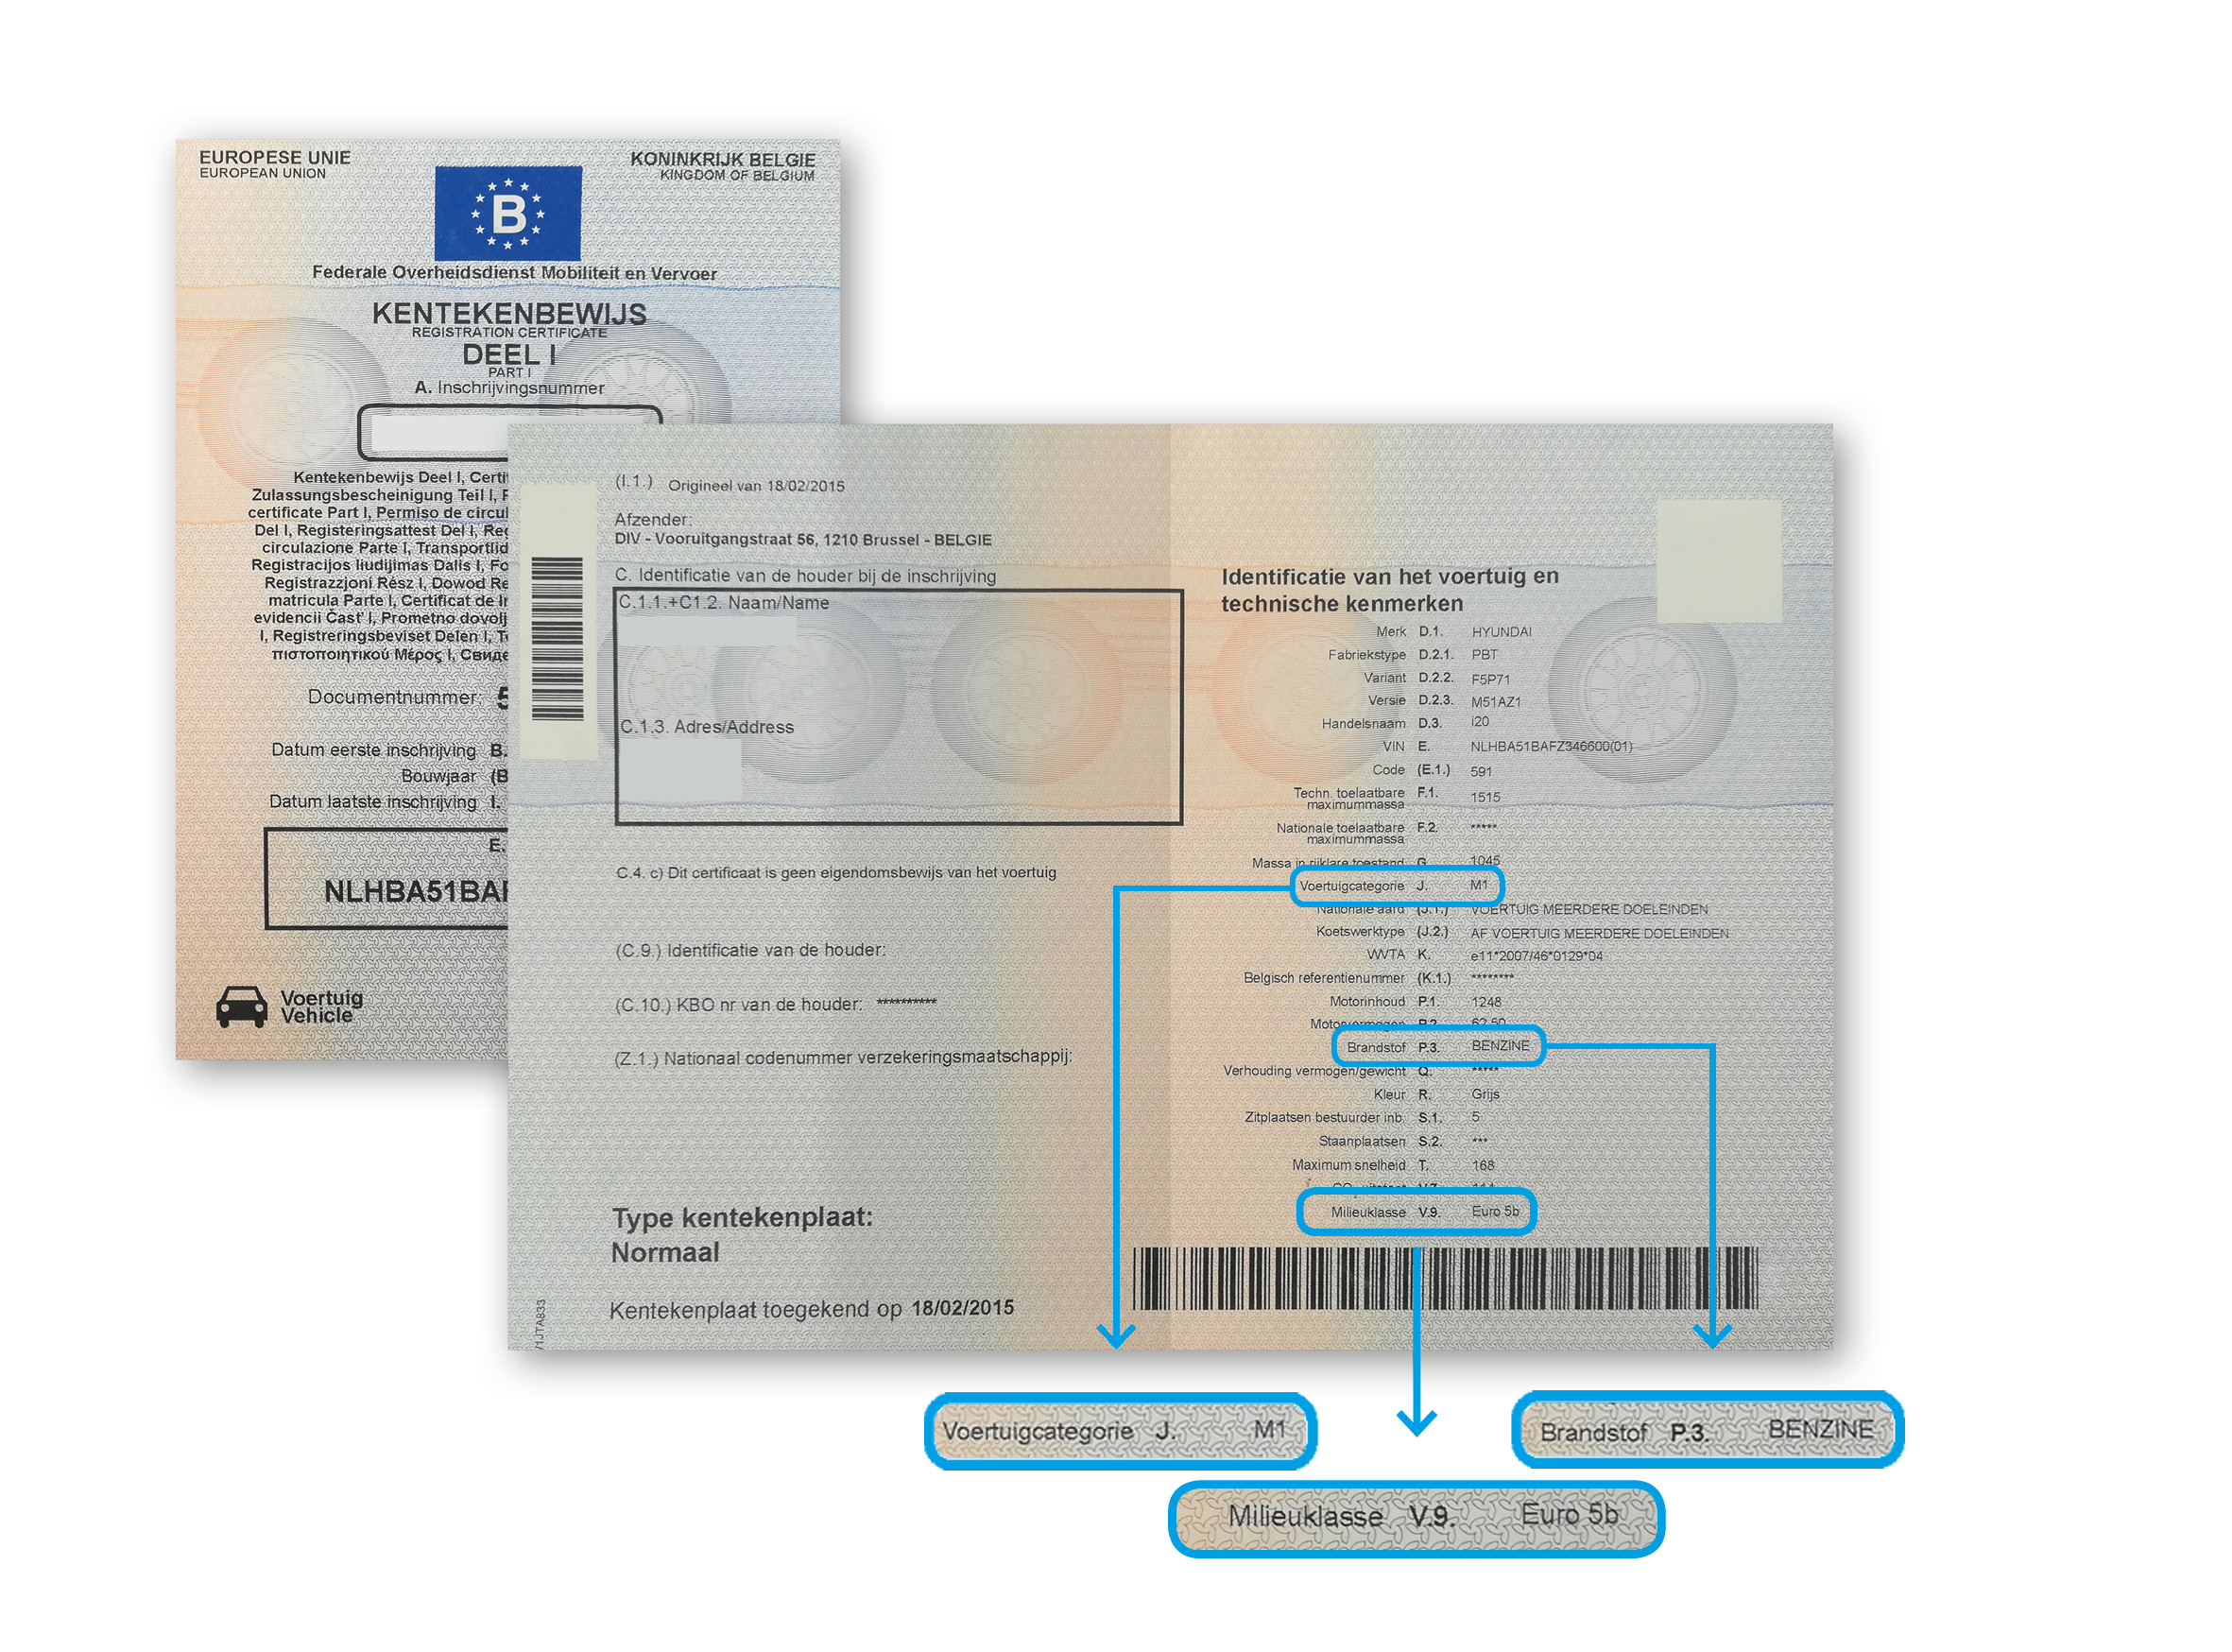 Inschrijvingsbewijs met voertuigcategorie, euronorm en brandstof 